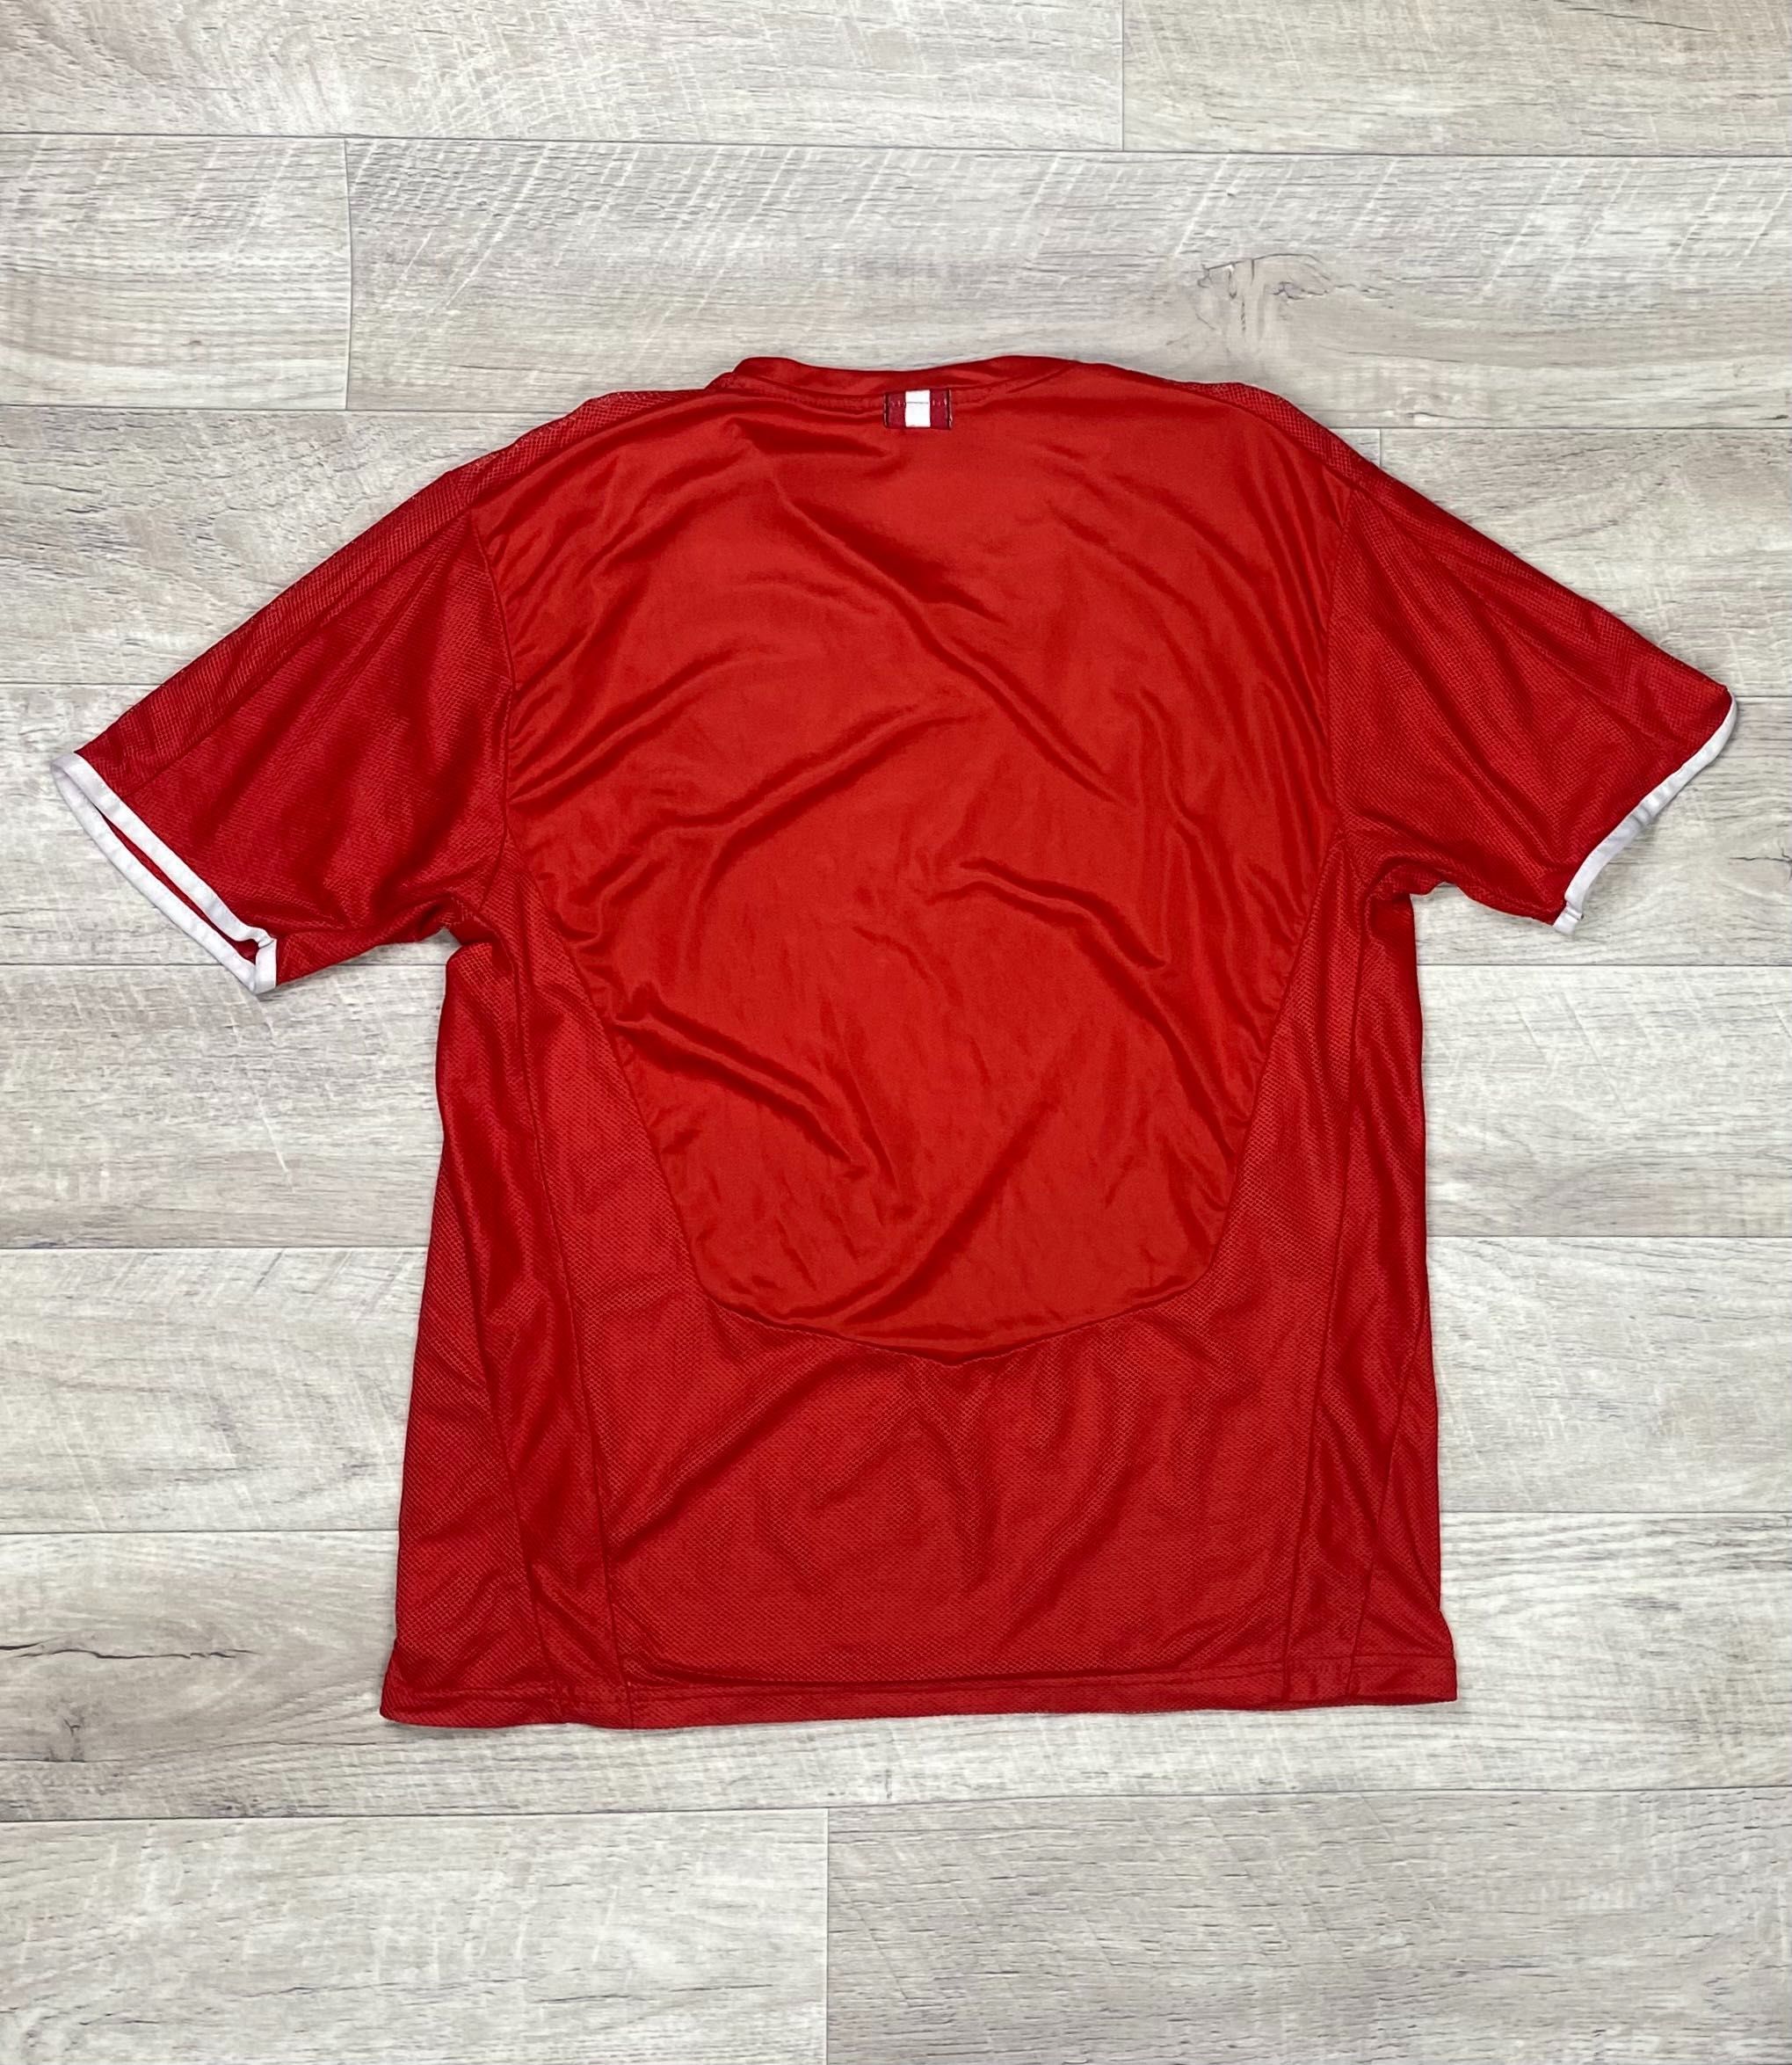 Puma Austria футболка 164 см подростковая футбольная красная оригинал